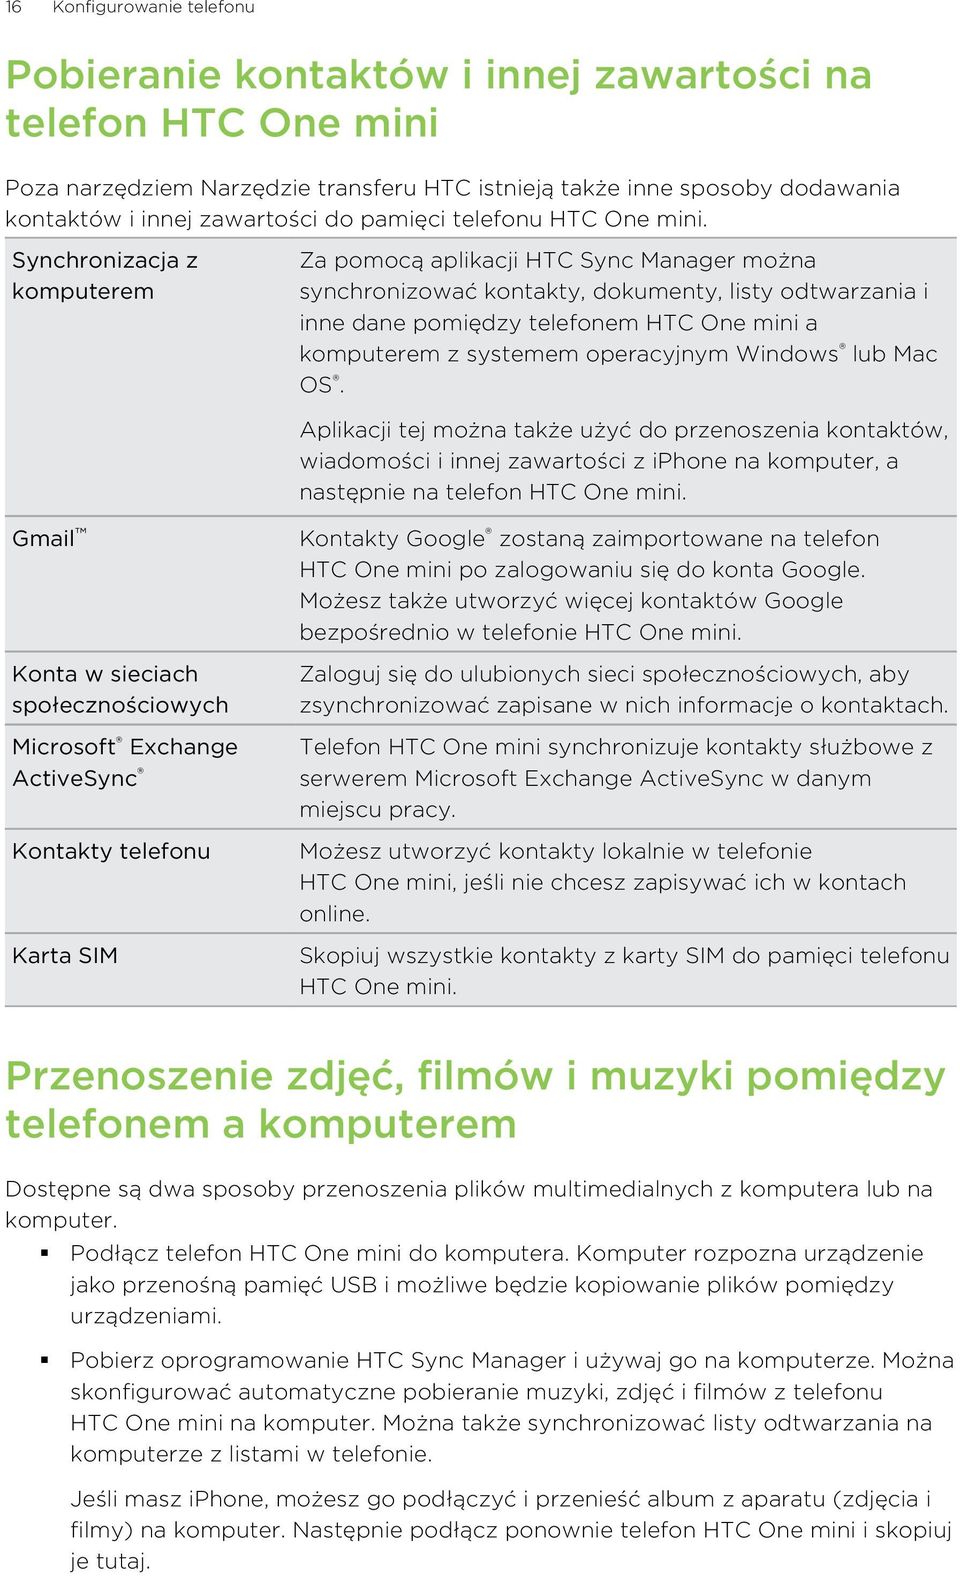 Synchronizacja z komputerem Za pomocą aplikacji HTC Sync Manager można synchronizować kontakty, dokumenty, listy odtwarzania i inne dane pomiędzy telefonem HTC One mini a komputerem z systemem